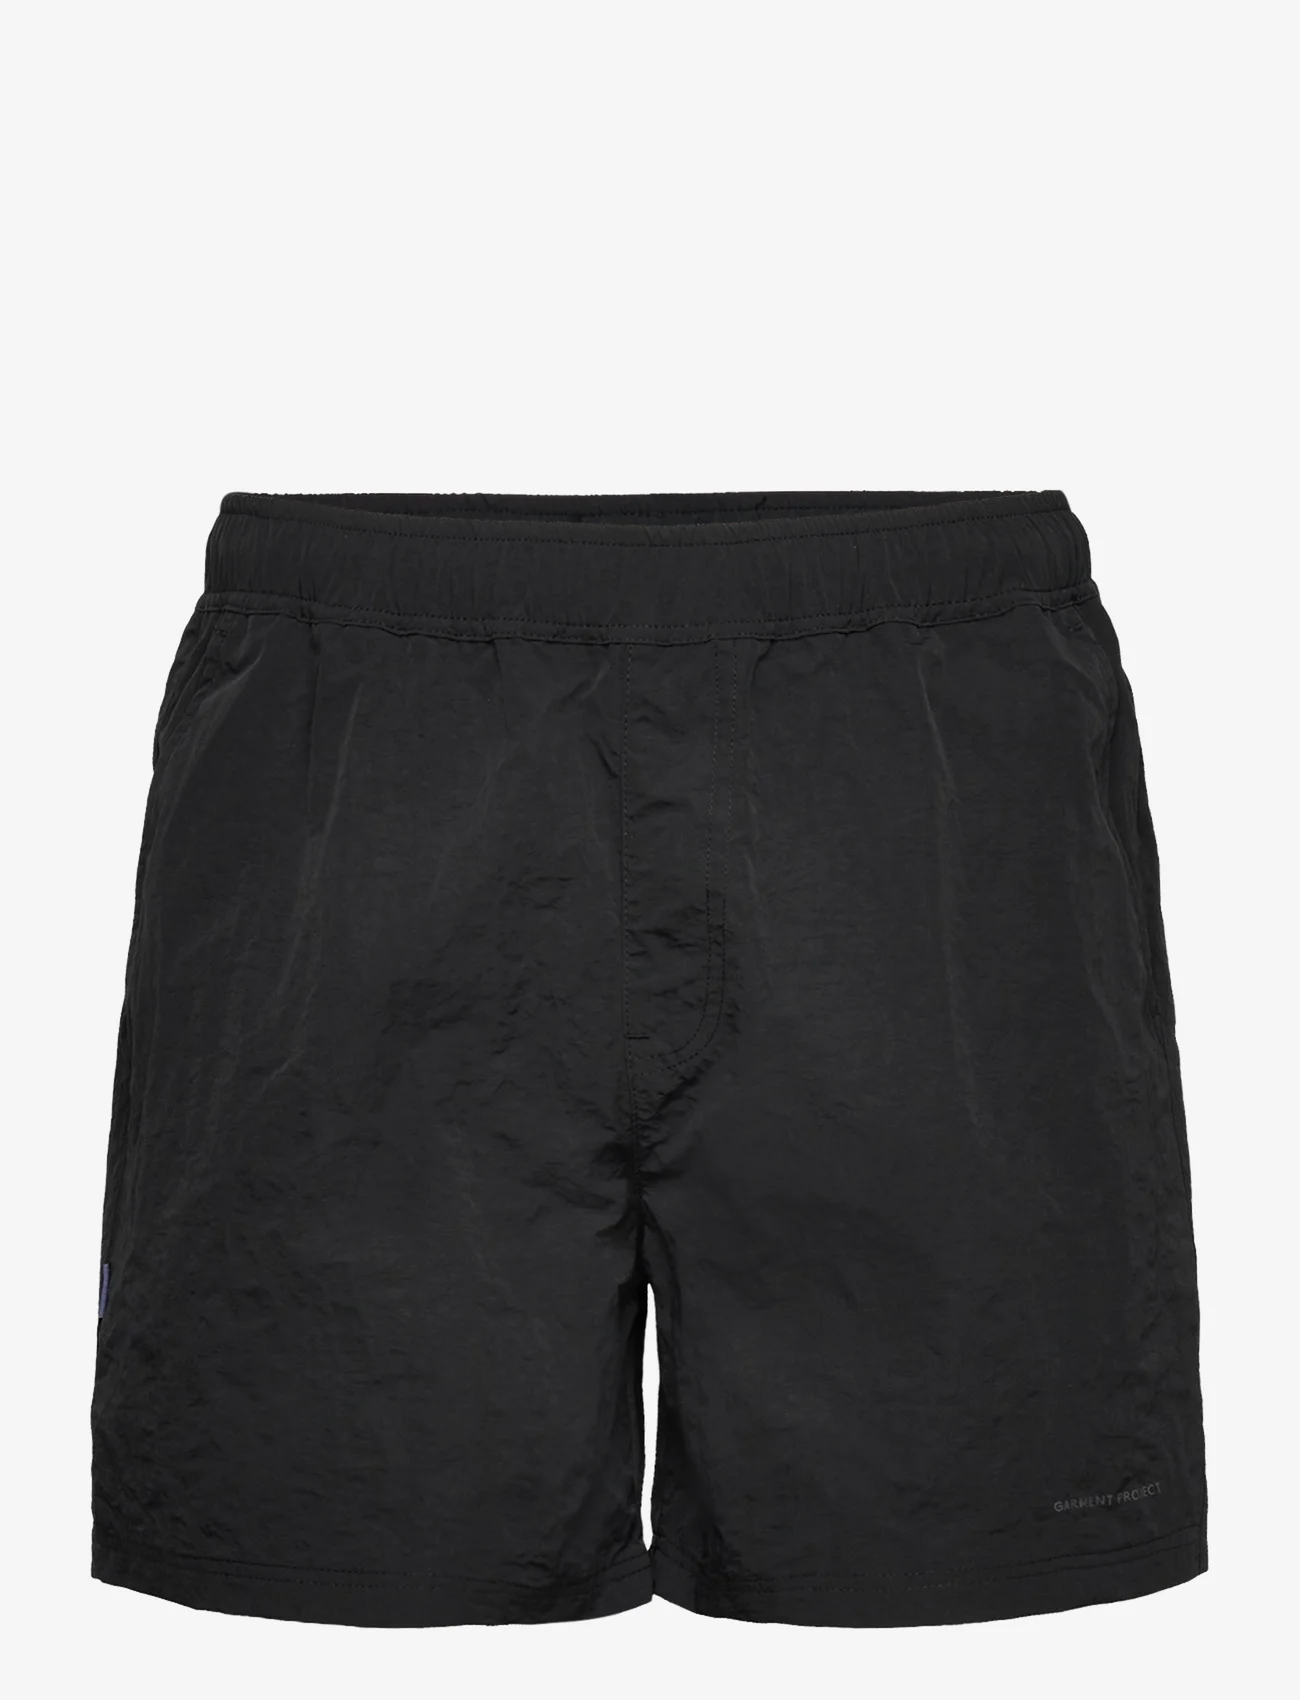 Garment Project - Tech Shorts - Black - kasdienio stiliaus šortai - black - 0